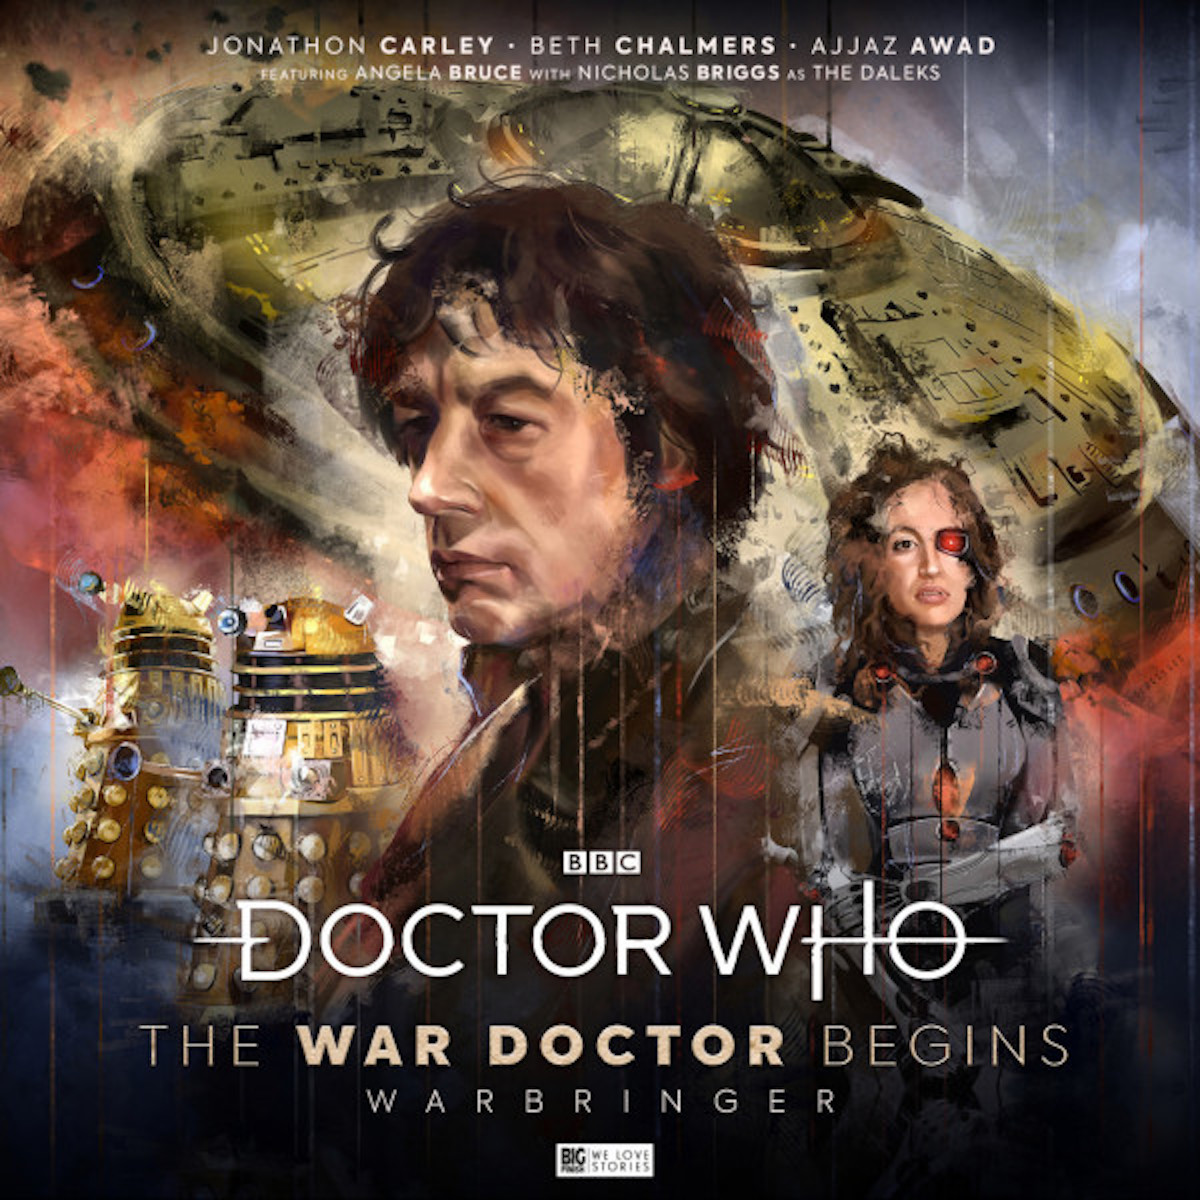 The War Doctor Begins: Warbringer